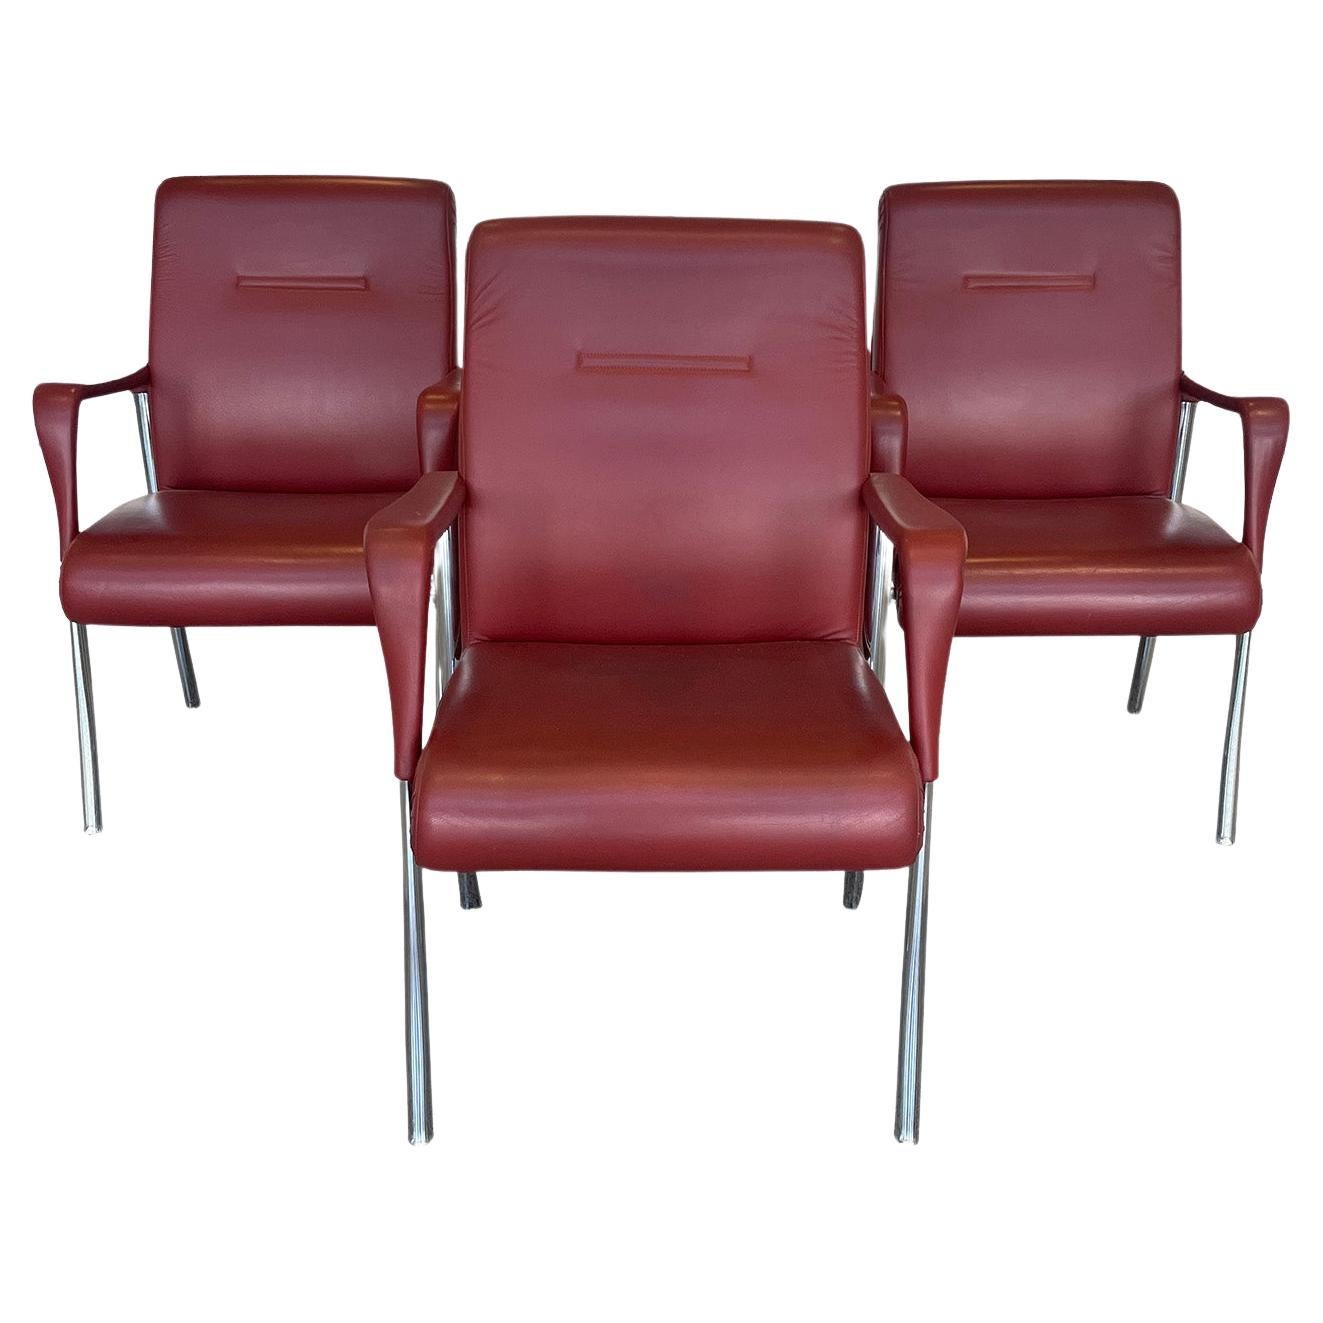 Trois chaises de salle à manger ou de bureau en cuir par Poltrona Frau en cuir rouge sang de bœuf